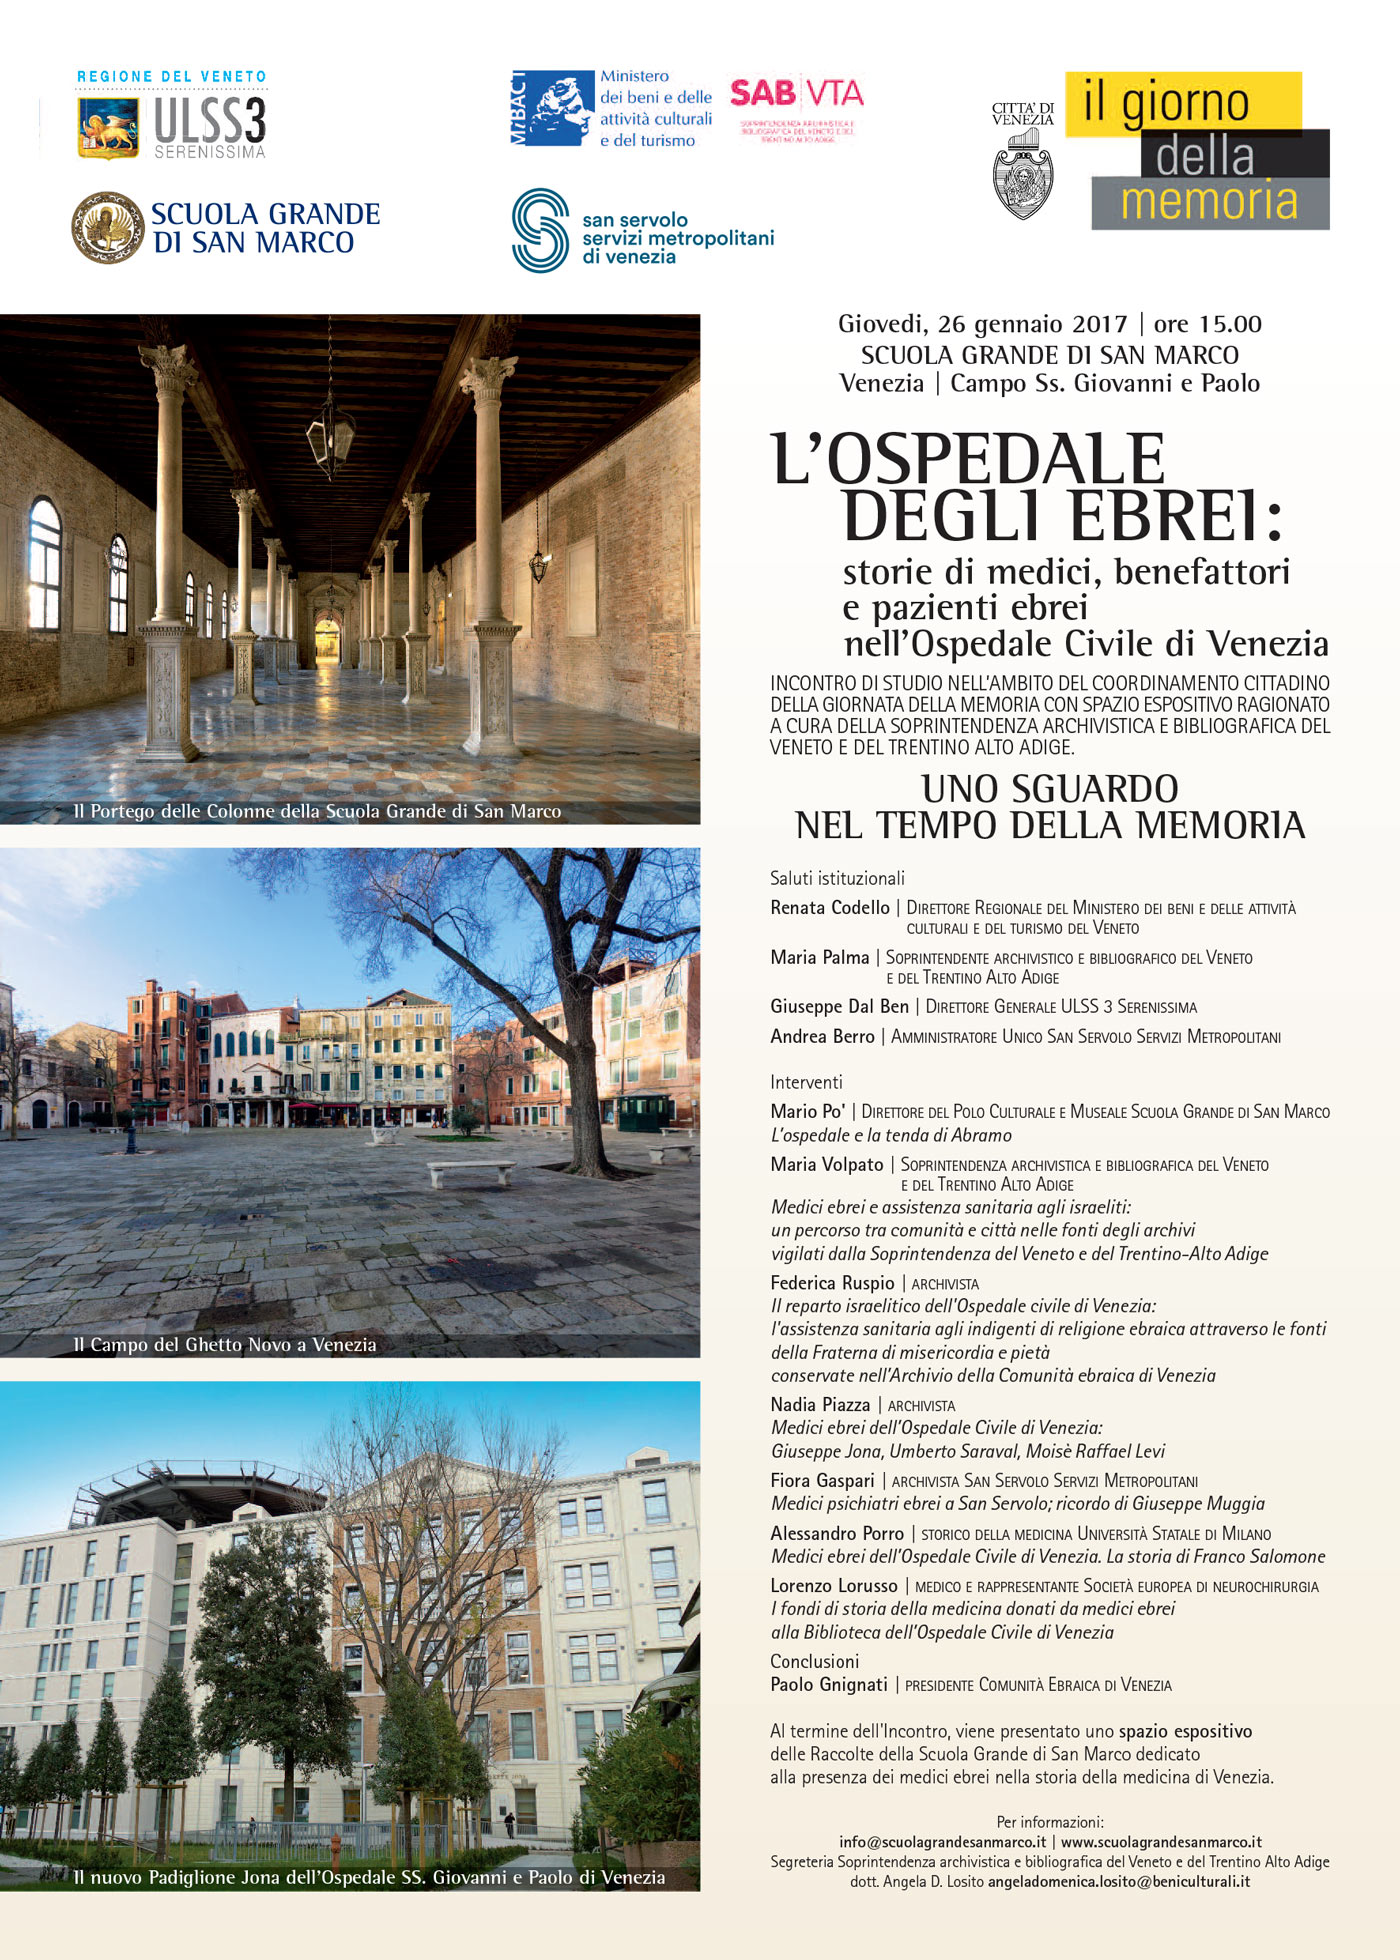 L’OSPEDALE DEGLI EBREI: storie di medici, benefattori e pazienti ebrei nell'Ospedale Civile di Venezia